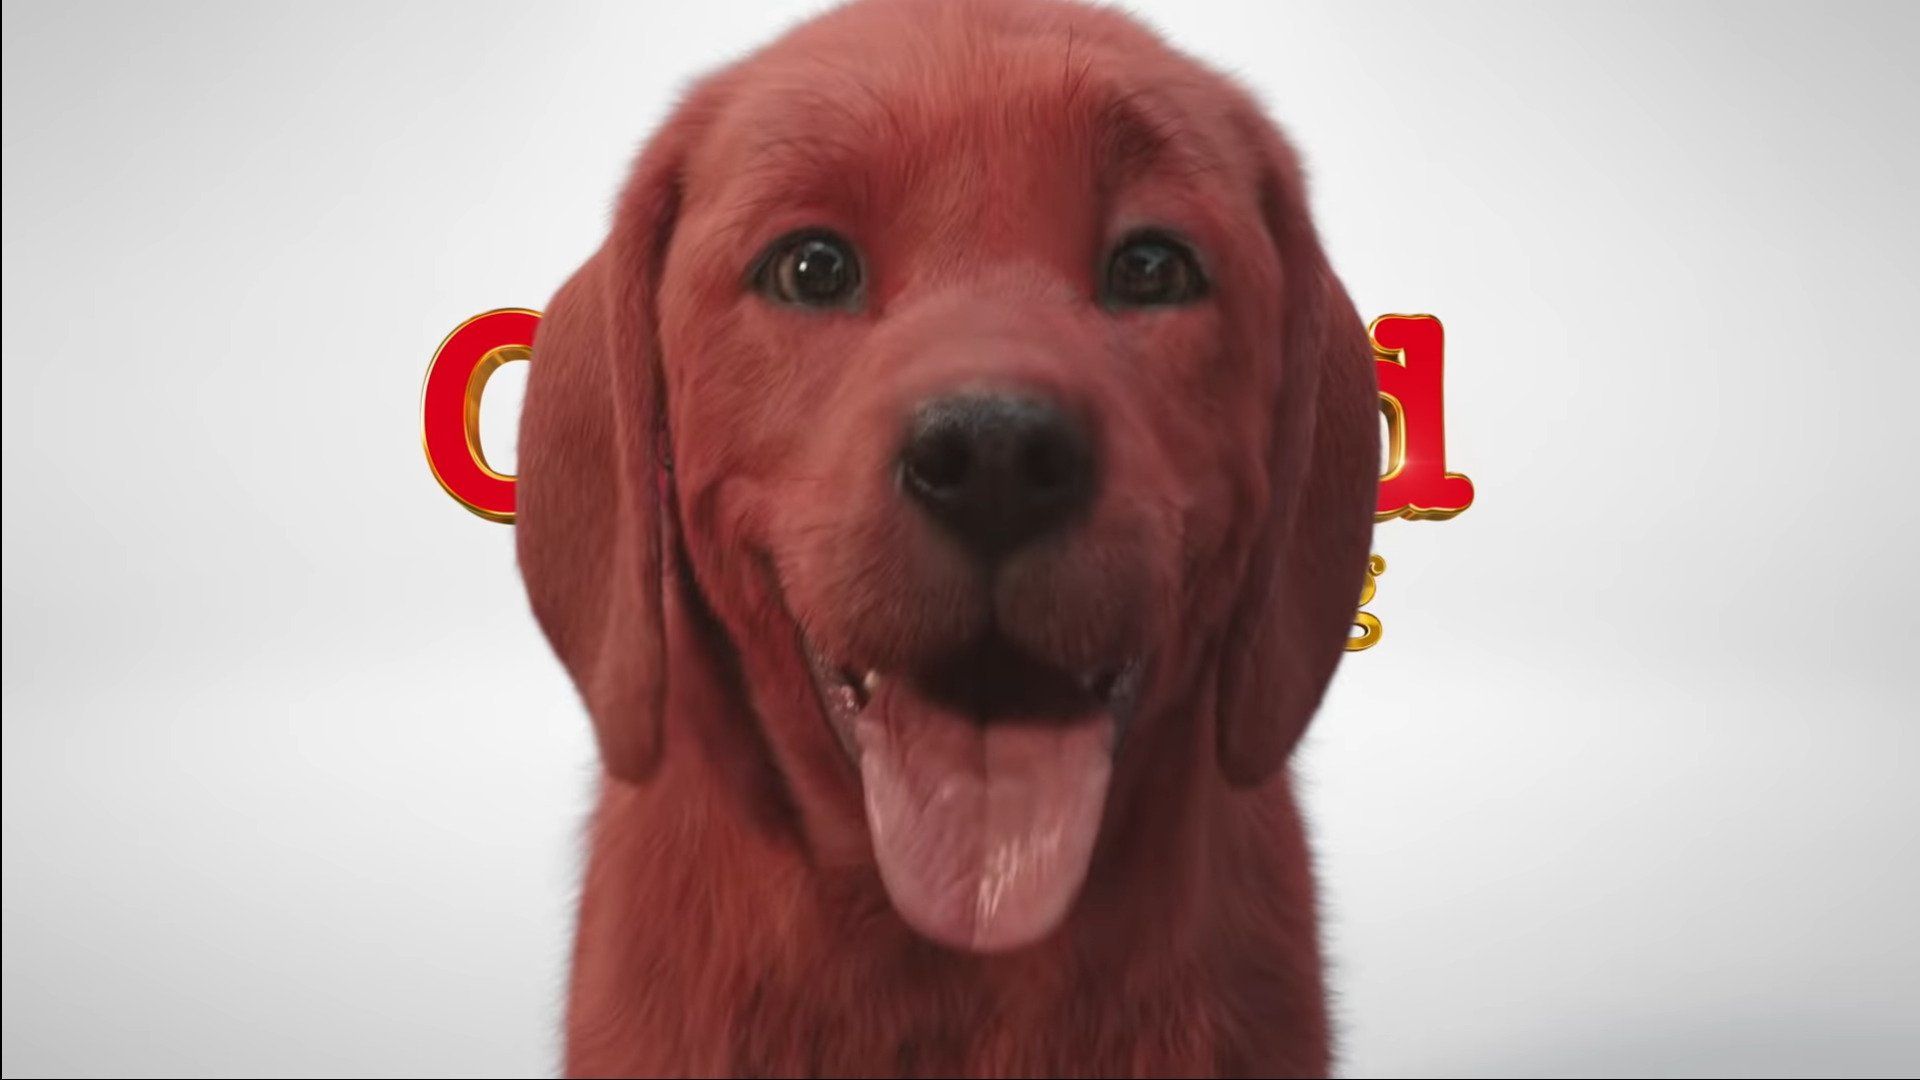 Veci, ktoré sme dnes videli: CGI Clifford, veľký červený pes, bude strašiť v našich nočných morách